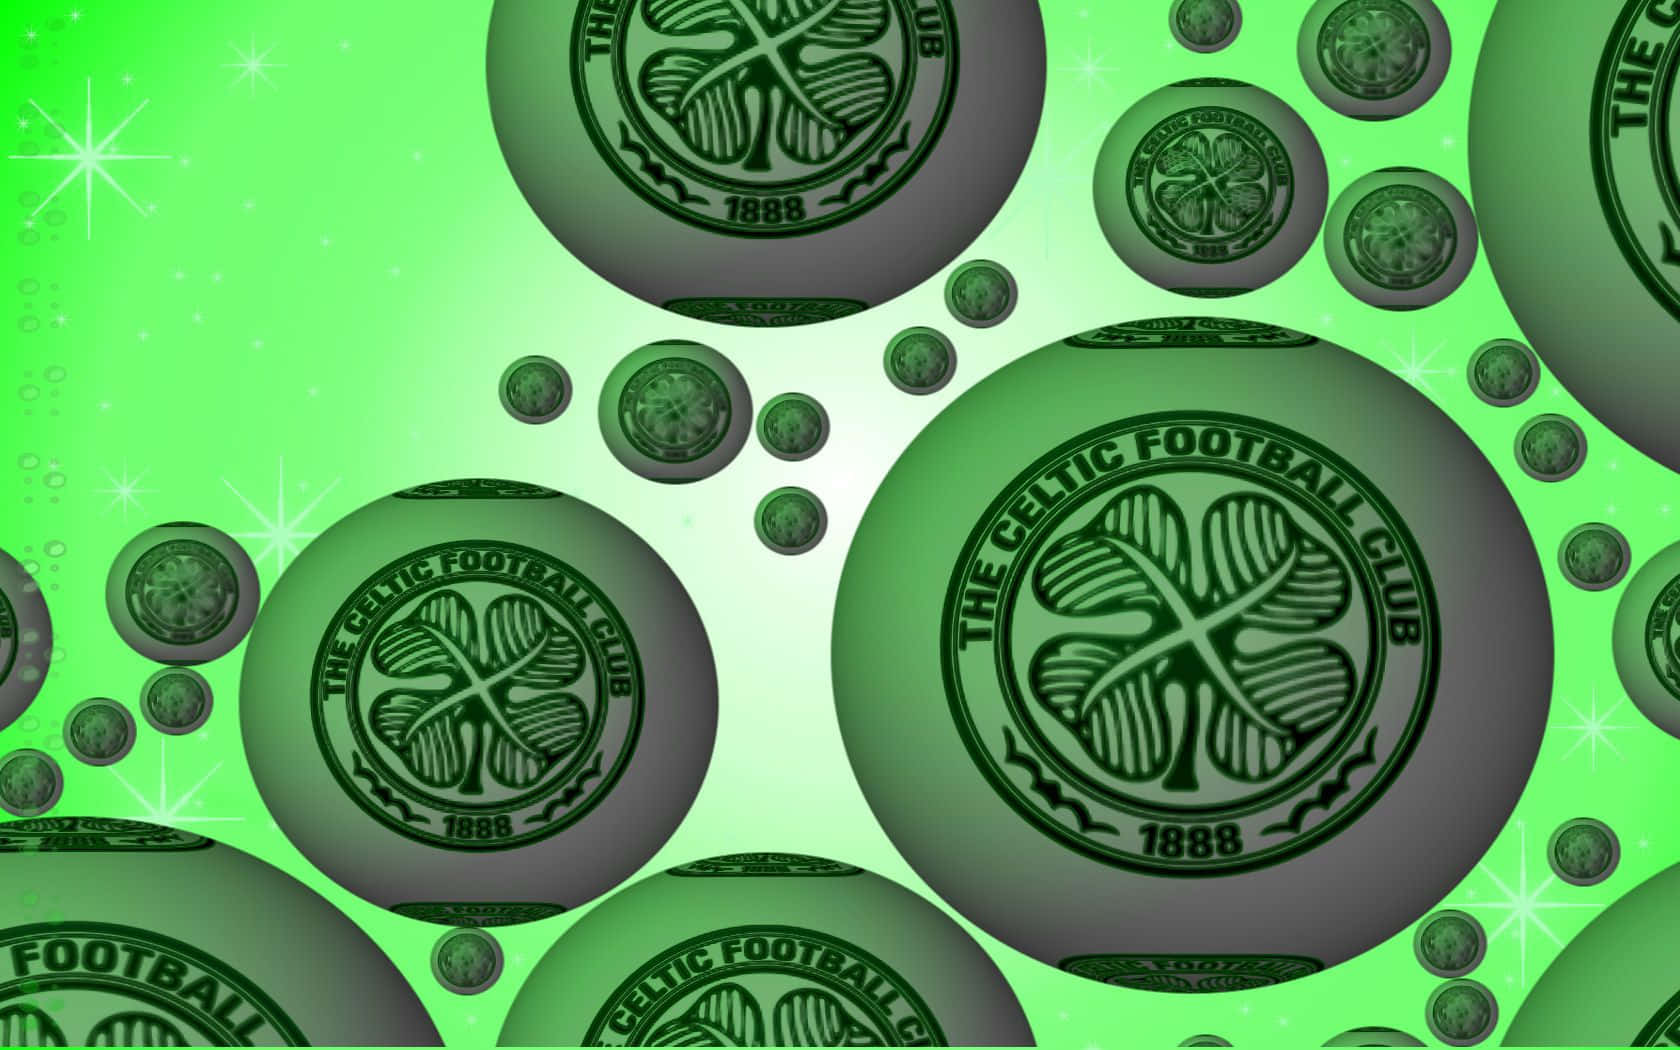 Mostrail Tuo Orgoglio Indossando Il Verde E Bianco Iconico Del Celtic Fc. Sfondo